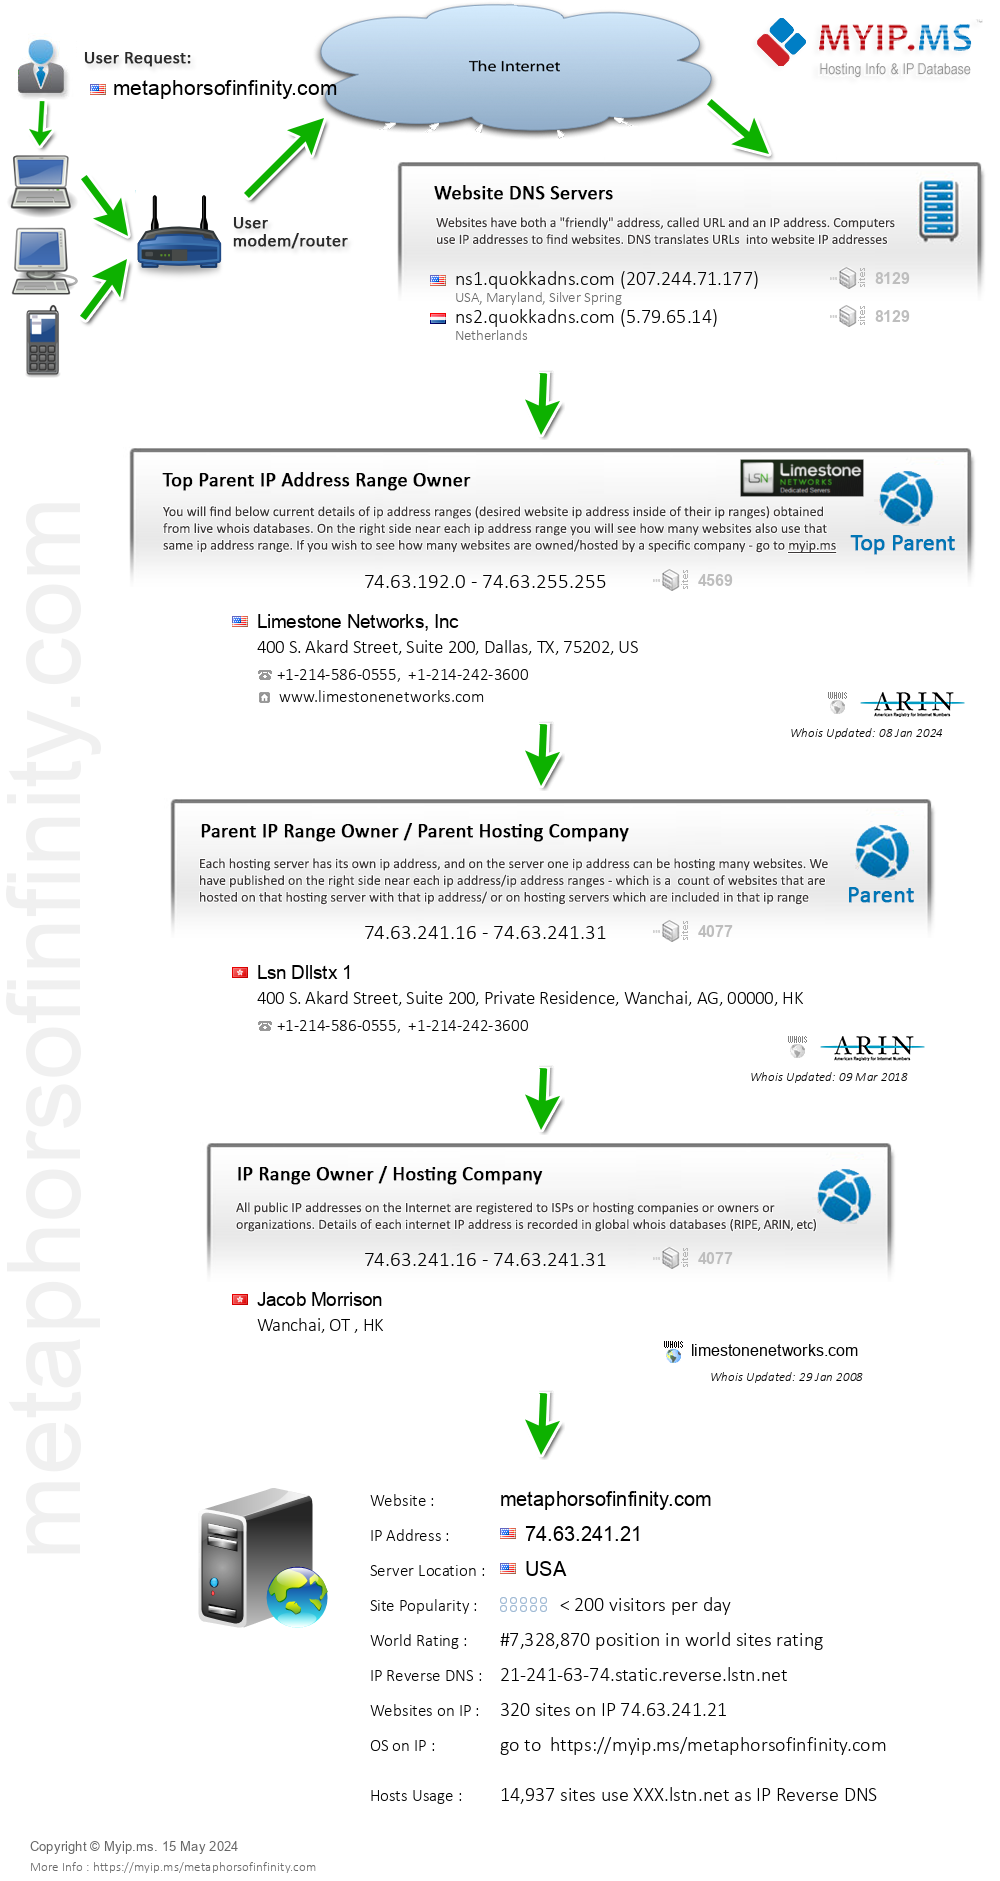 Metaphorsofinfinity.com - Website Hosting Visual IP Diagram